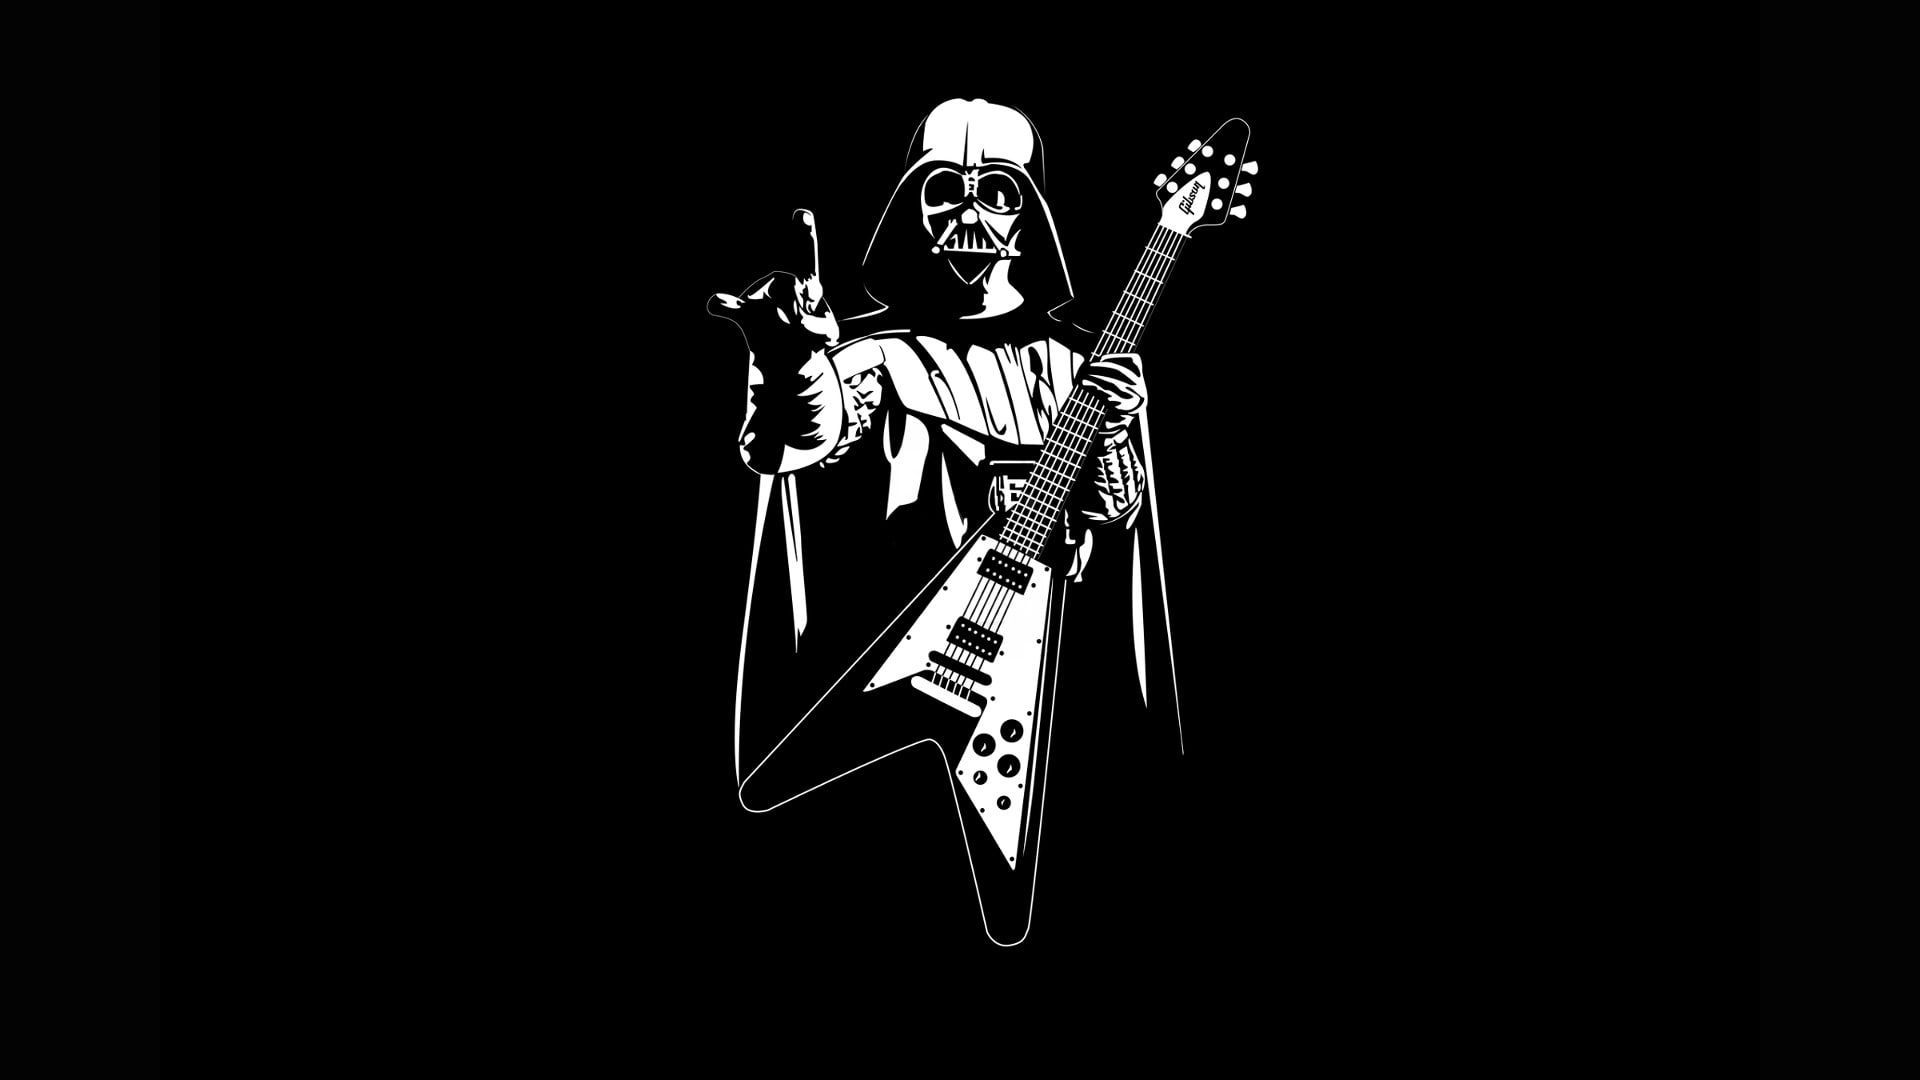 Darth Vader illustration Star Wars #guitar Heavy Metal #Pearls P # wallpaper #hdwallpaper #desktop. Darth vader wallpaper, Darth vader, Heavy metal